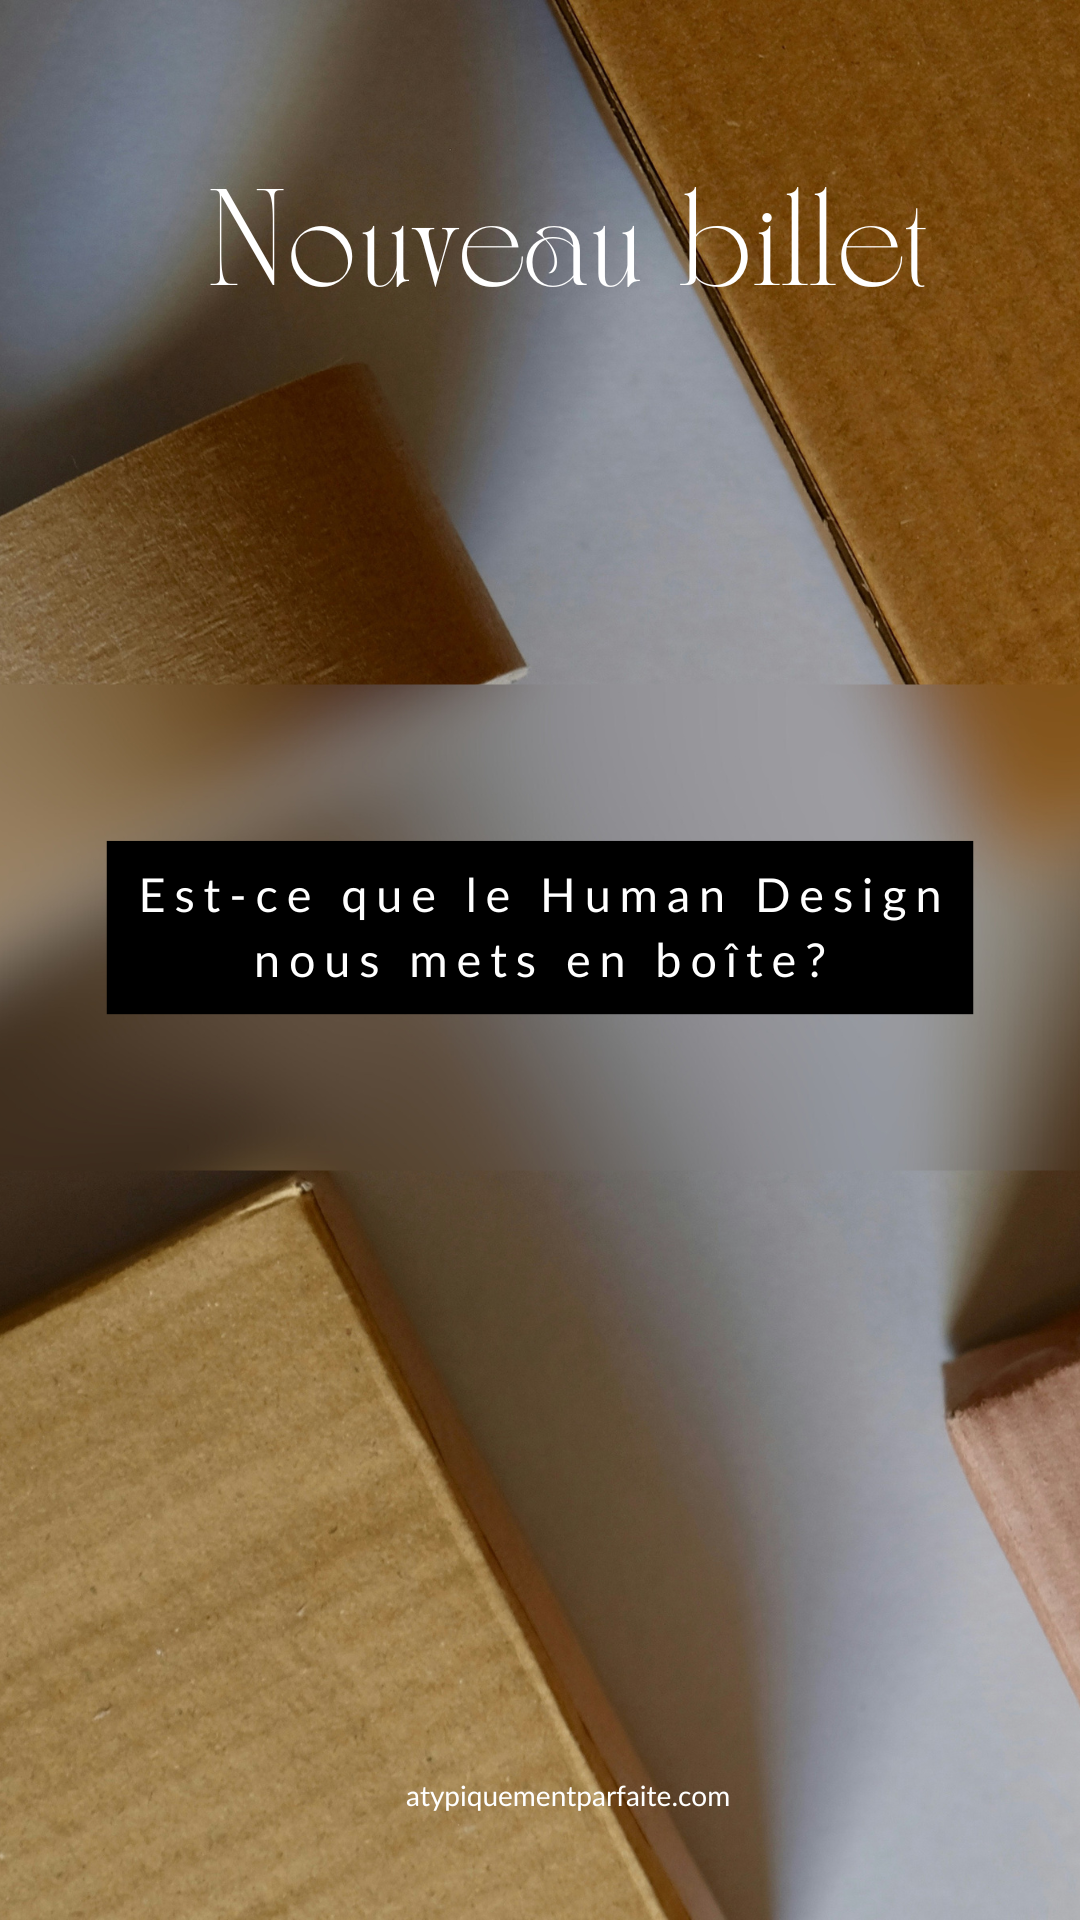 Boîtes - On peut avoir l'impression que le Human Design crée de nouvelles boites alors que ça devrait être "la science de la différenciation". Réflexion sur le sujet.